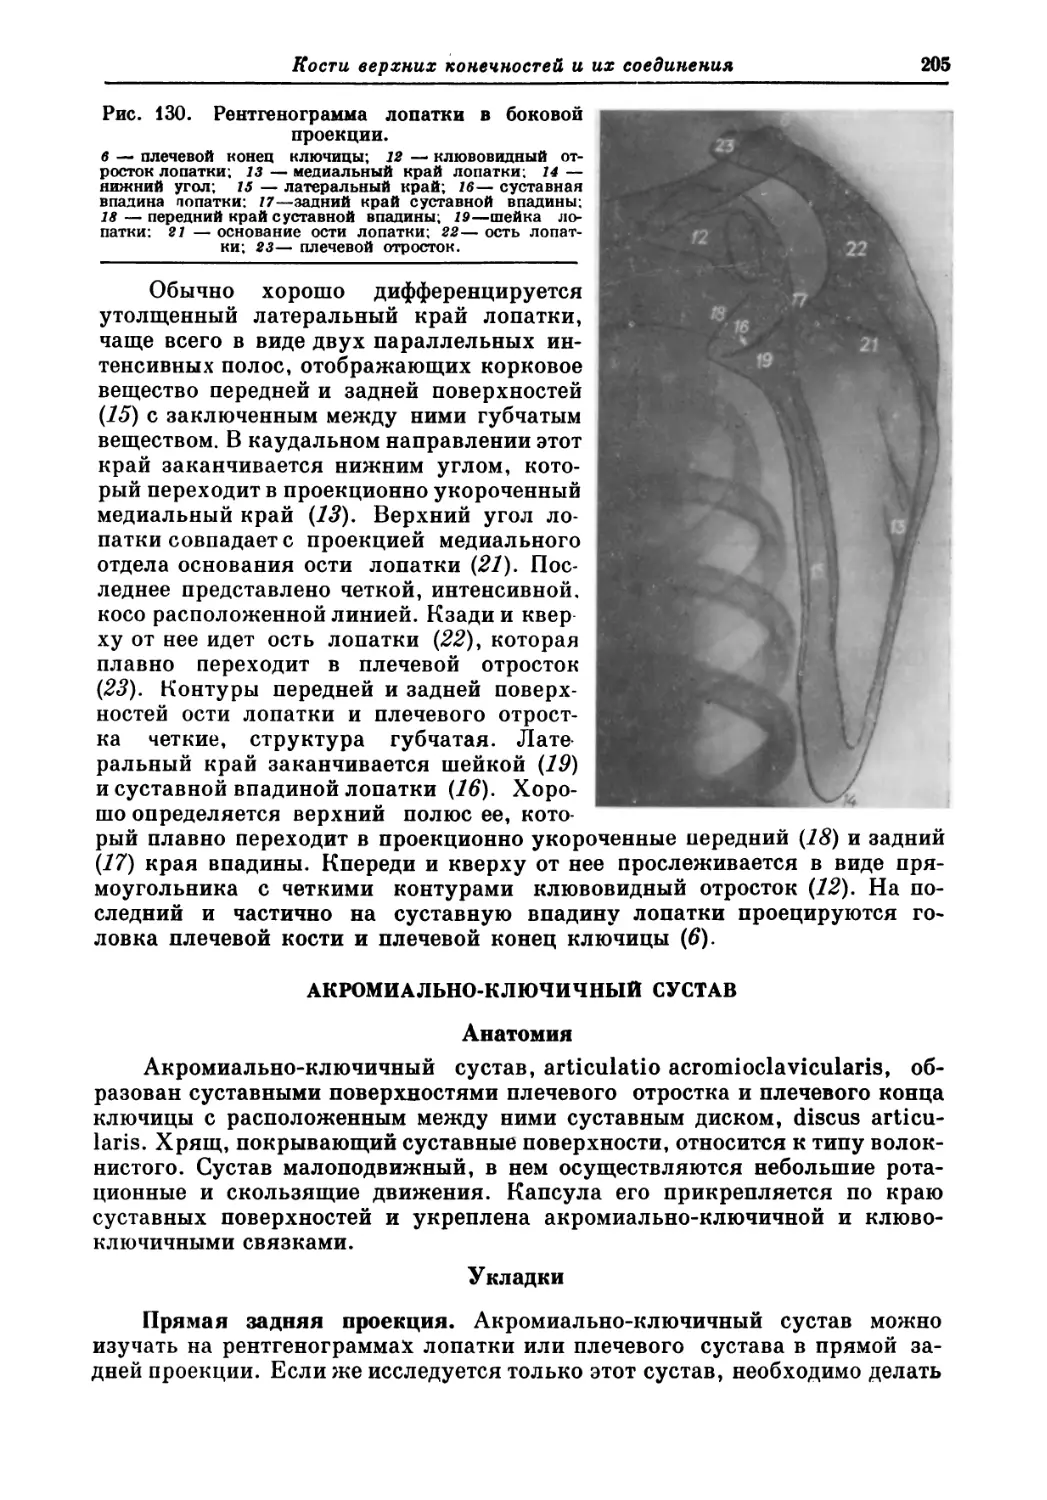 Акромиально-ключичный сустав
Анатомия
Укладки